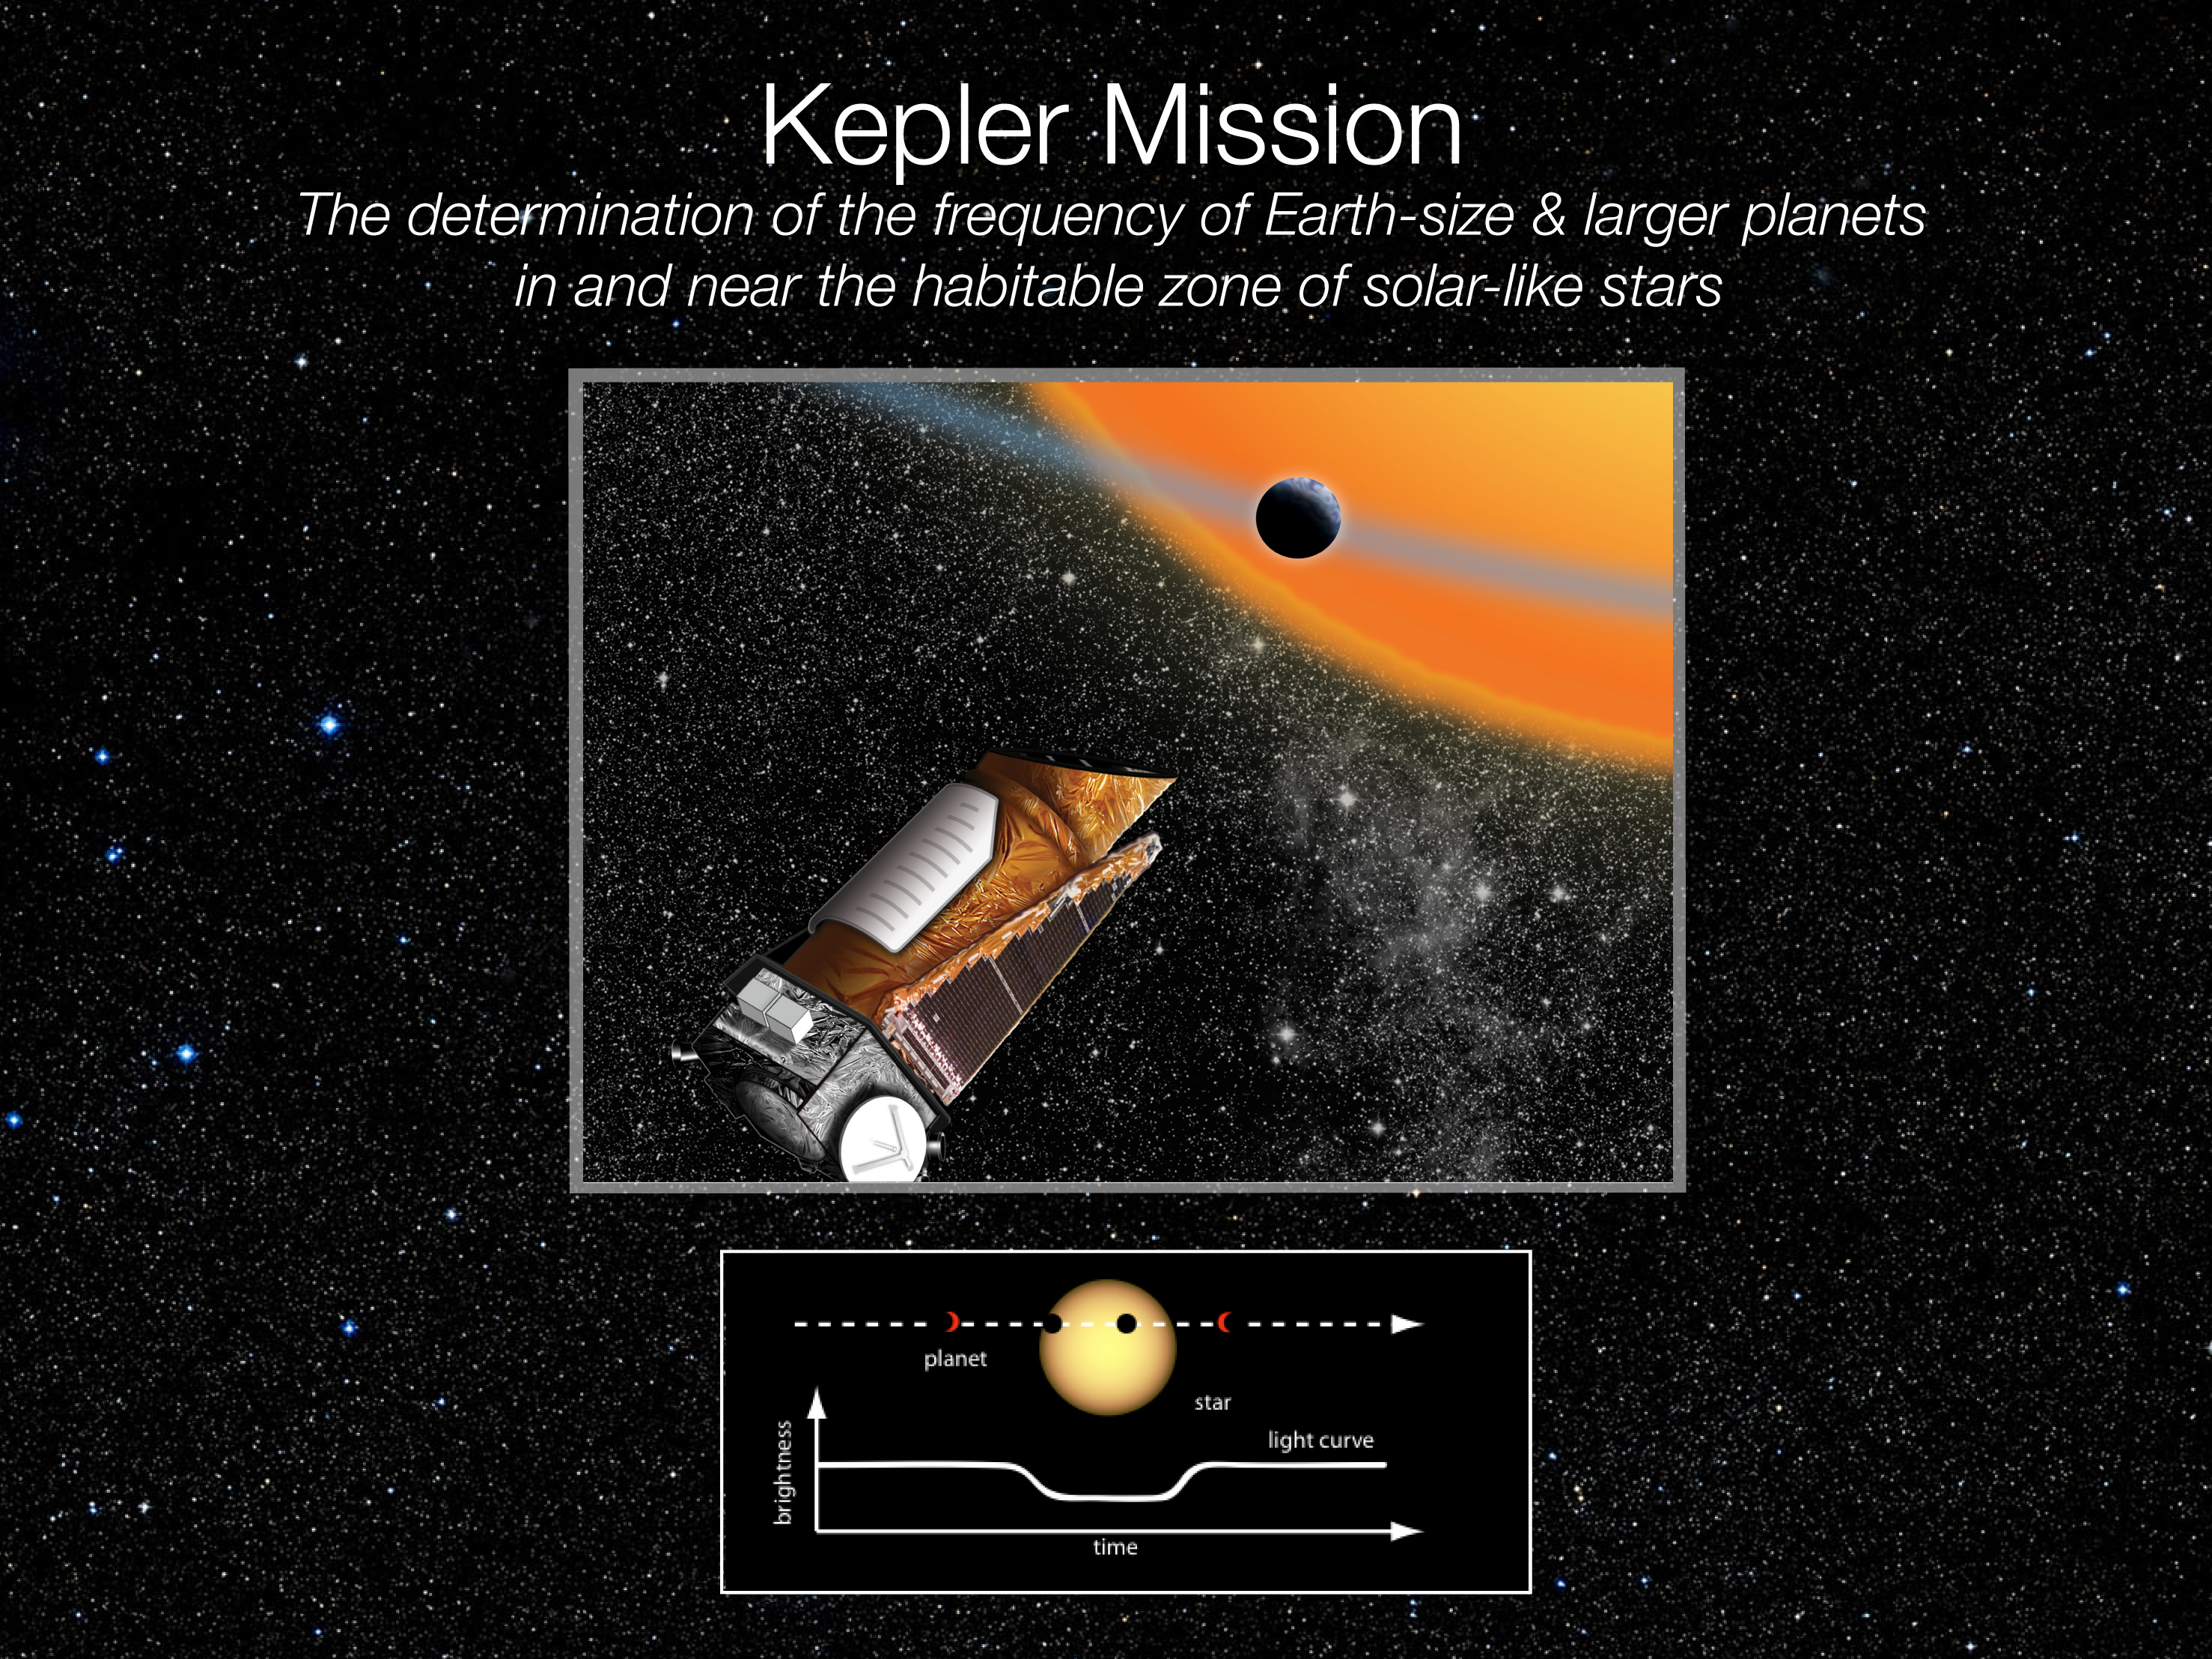 En vue d'artiste, Kepler chasse des exoplanètes dans la Voie lactée. L'instrument utilise la méthode des transits planétaires, consistant à repérer la faible baisse de luminosité d'une étoile quand une planète passe devant. Lancé en 2009 pour une mission de 3 ans et demi, Kepler a vu sa mission prollongée jusqu'en 2016. Le télescope a repéré environ 5.000 exoplanètes, dont un peu plus d'un millier ont été confirmées par des observations depuis le sol. © Nasa